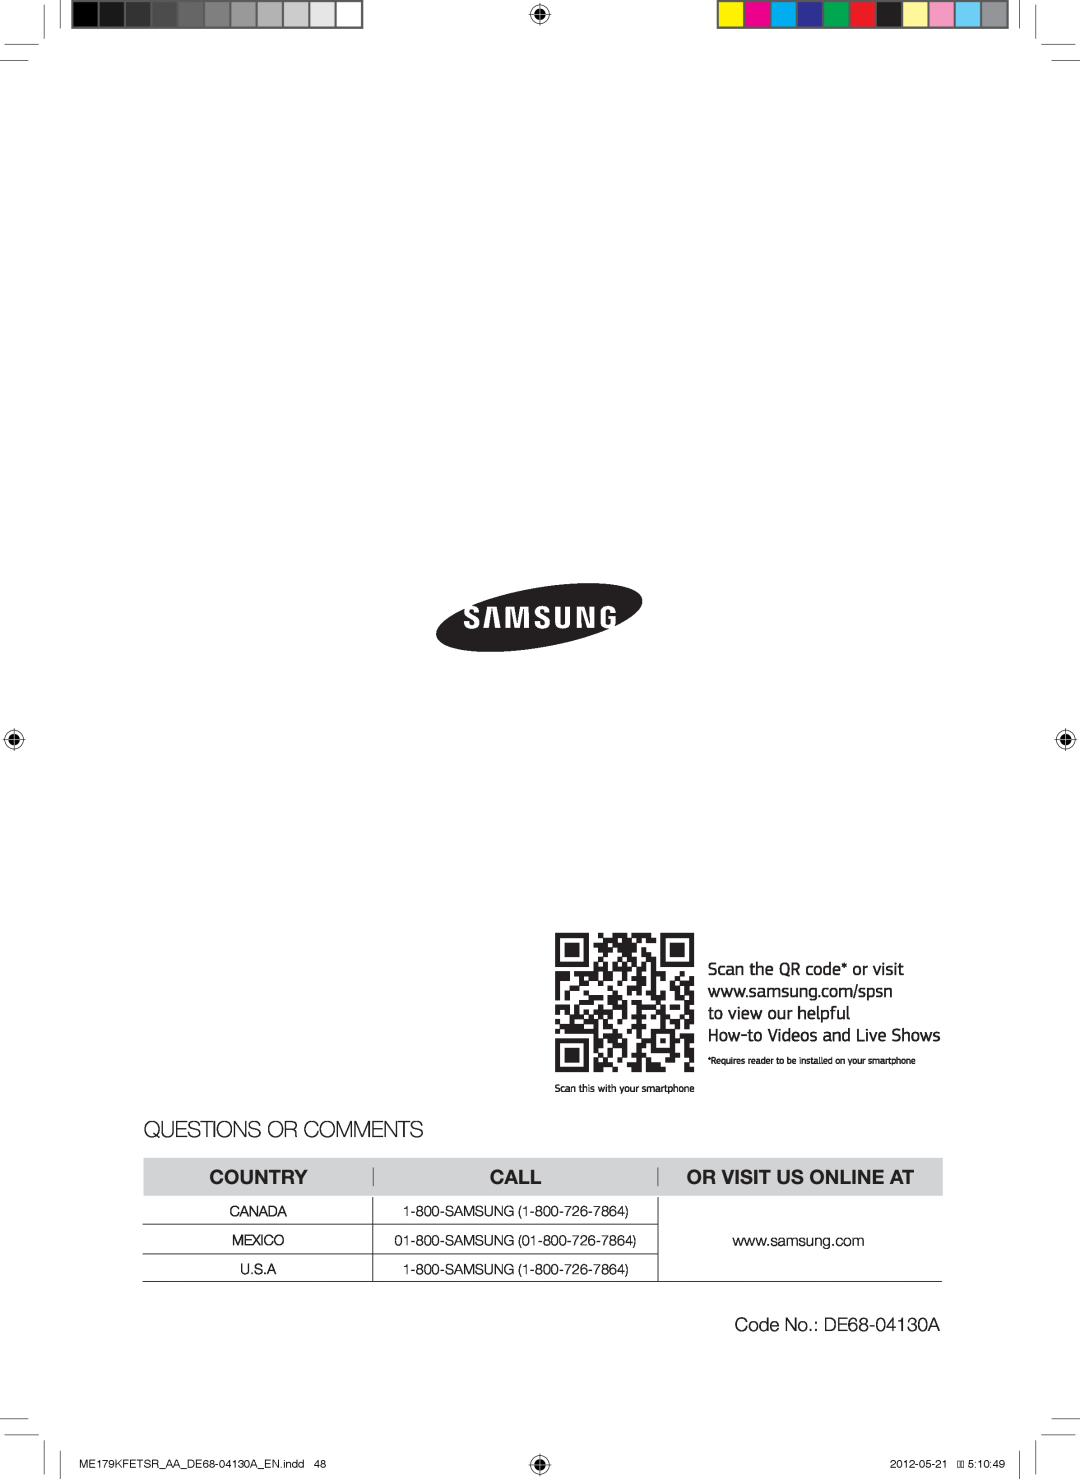 Samsung Code No. DE68-04130A, SAMSUNG 01-800-SAMSUNG 1-800-SAMSUNG, ME179KFETSR AA DE68-04130A EN.indd, 2012-05-21 5 10 